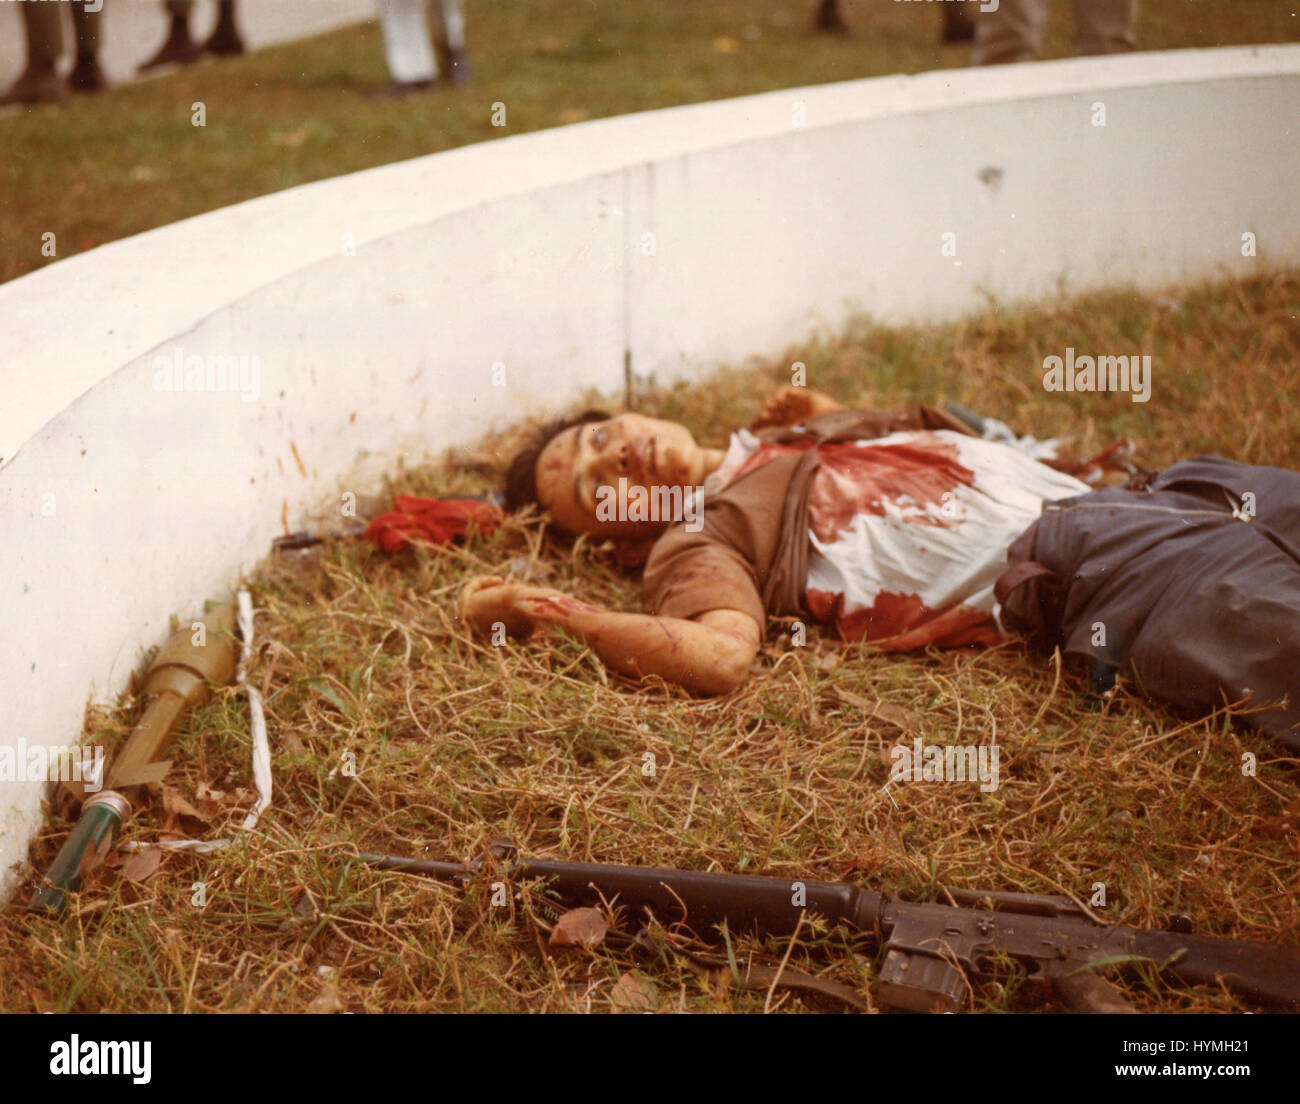 Eine tote Vietcong mit seinen Waffen in der Nähe liegt auf dem Gelände der amerikanischen Botschaft nach der Tet-Angriff. Saigon, Republik Vietnam. 31. Januar 1968. Stockfoto